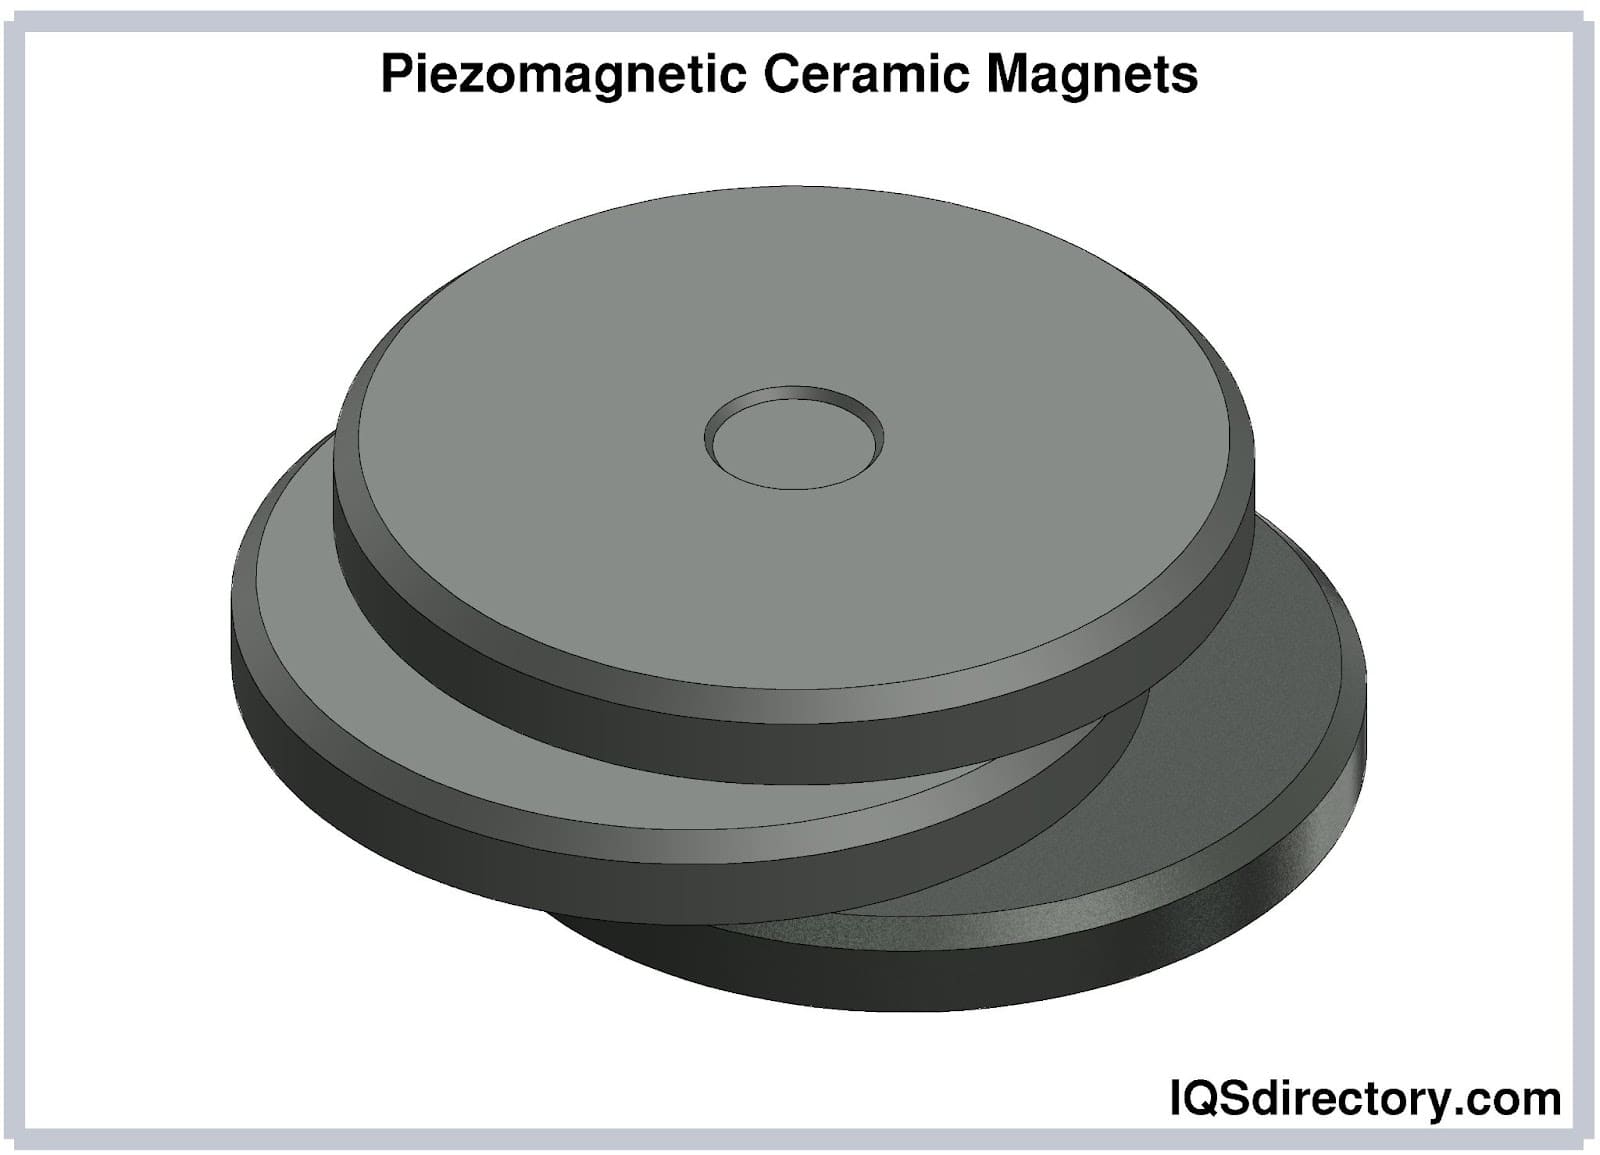 Piezomagnetic Ceramic Magnets